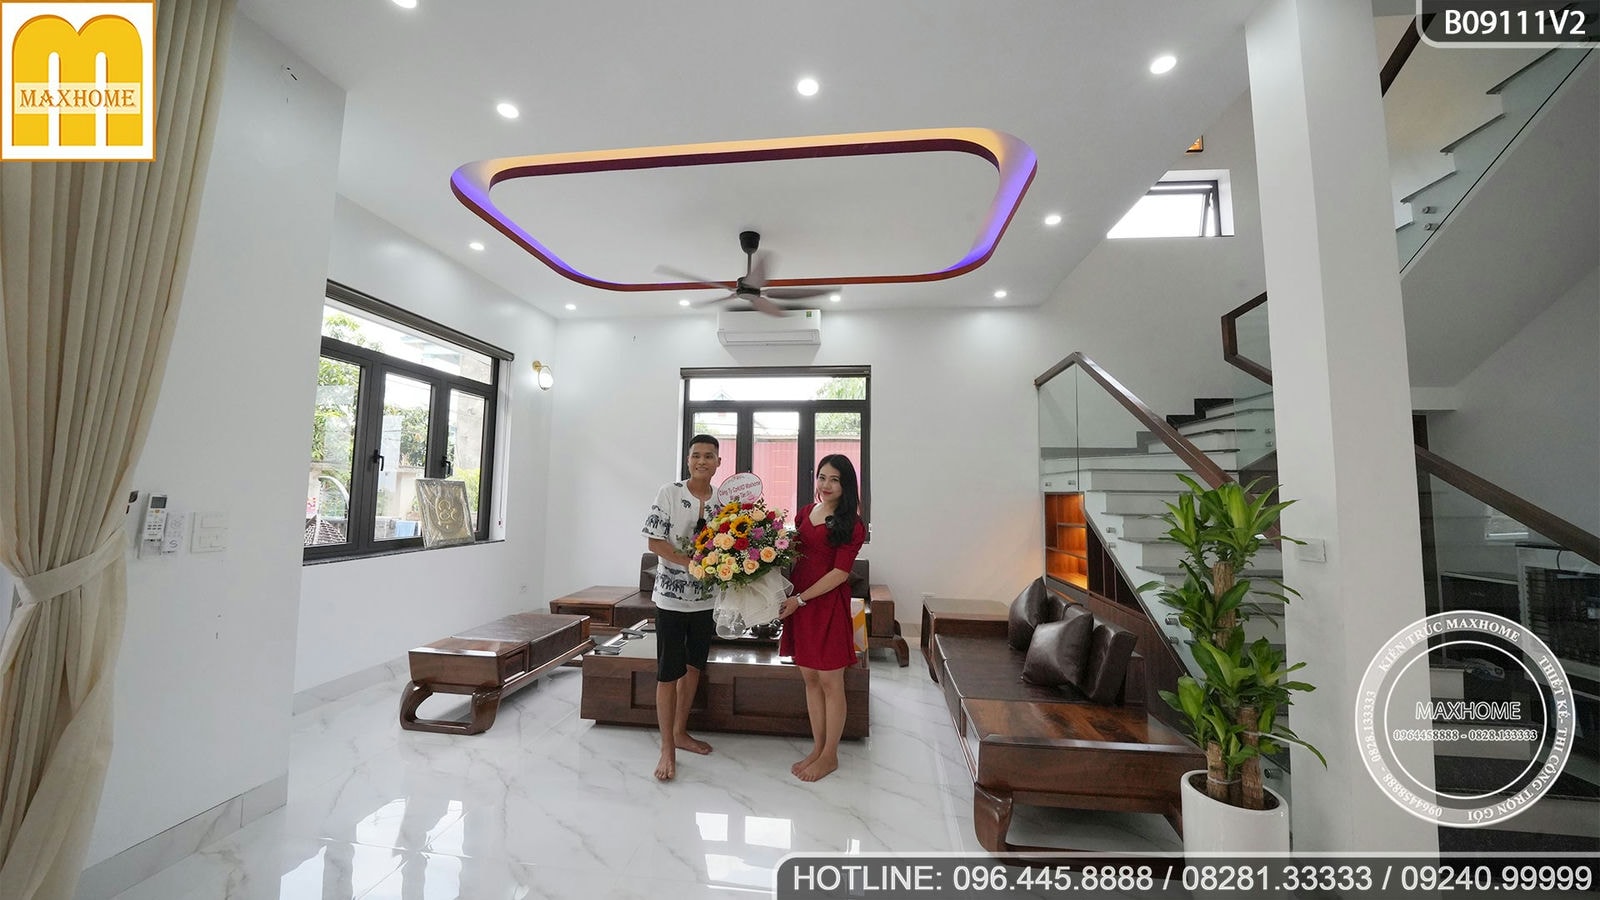 Khám phá nội thất khủng đặt riêng cho căn nhà tại Bắc Ninh | MH01430